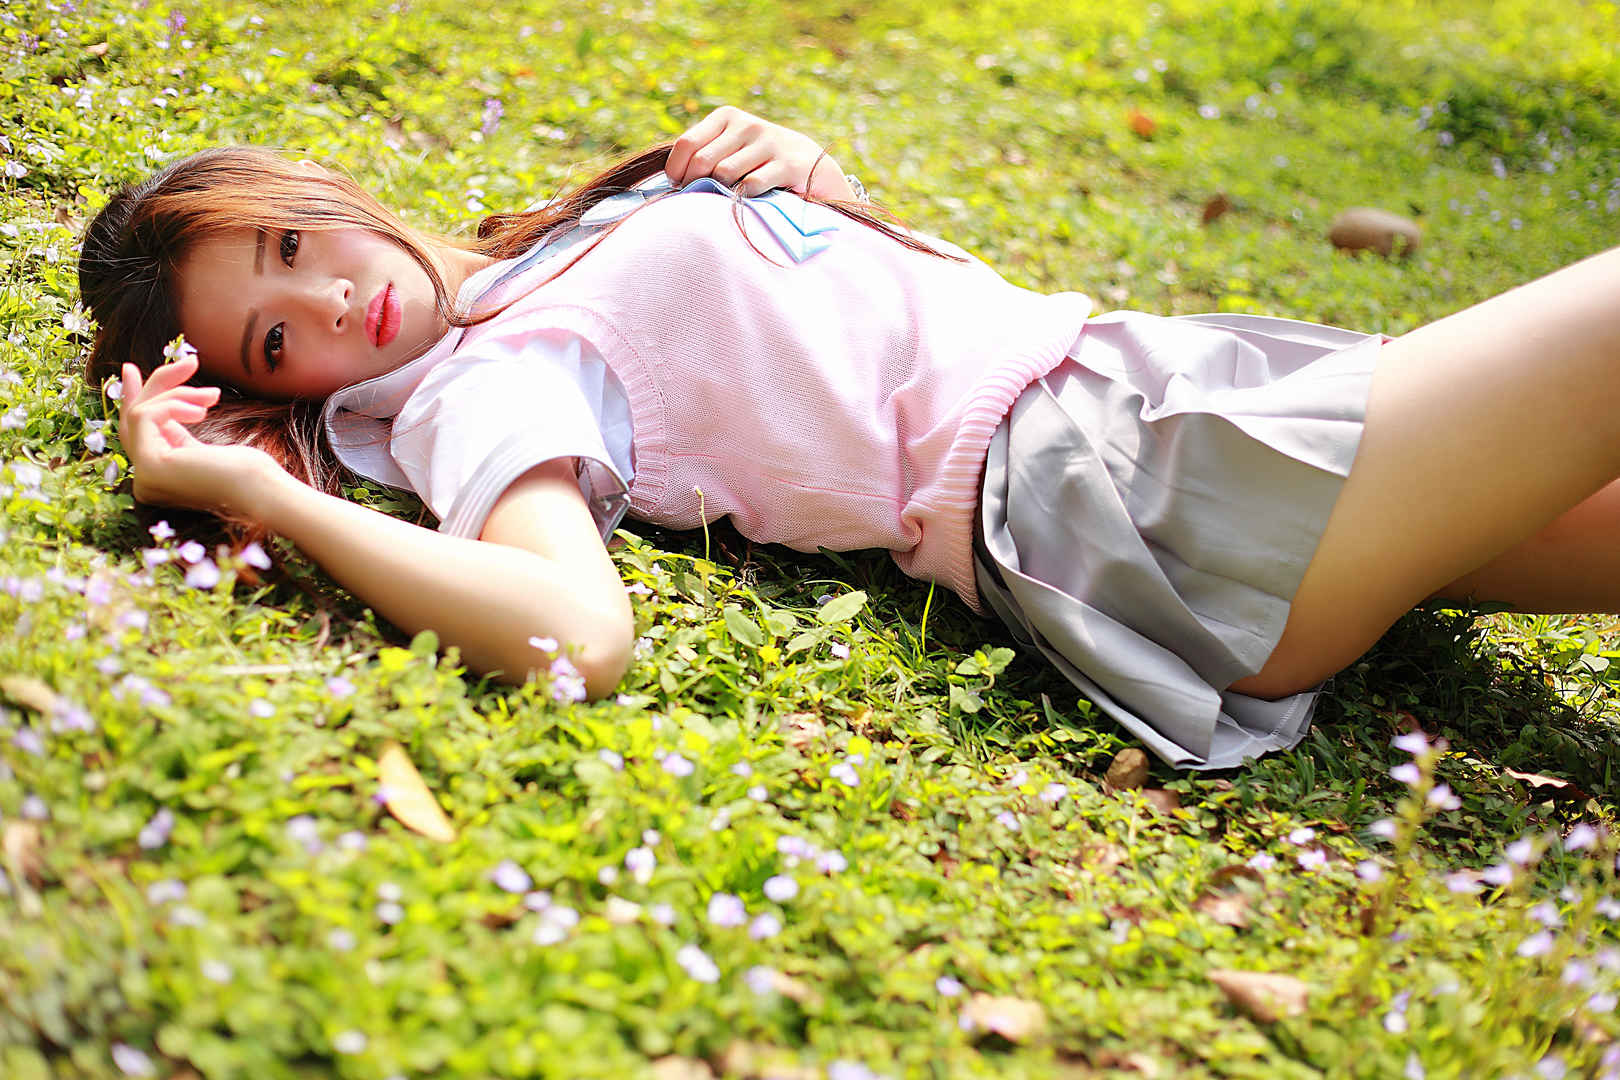 躺在草地上的欧美女孩图片-壁纸图片大全